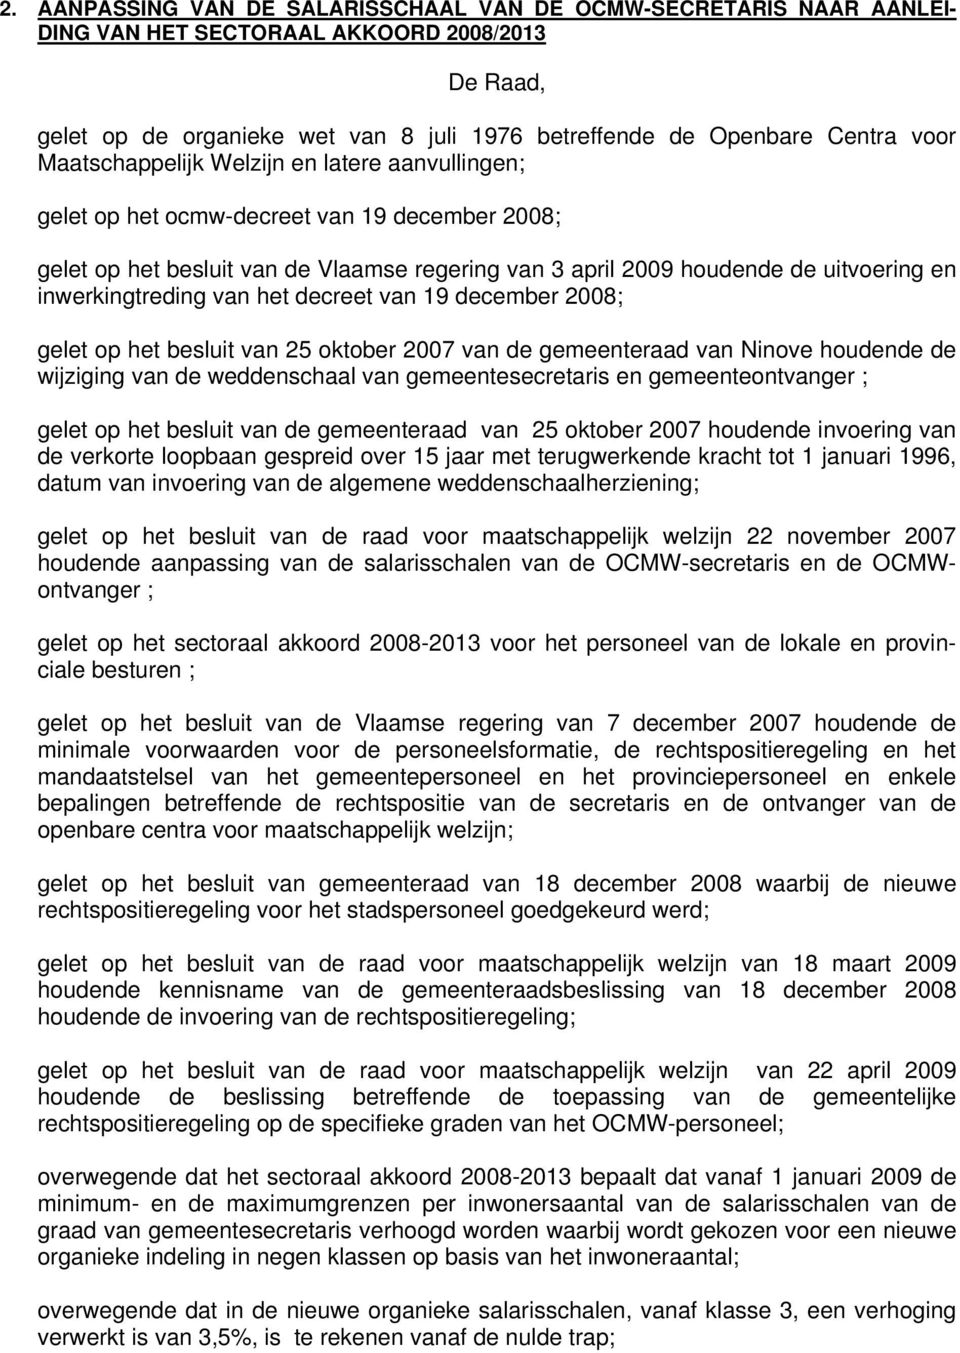 inwerkingtreding van het decreet van 19 december 2008; gelet op het besluit van 25 oktober 2007 van de gemeenteraad van Ninove houdende de wijziging van de weddenschaal van gemeentesecretaris en